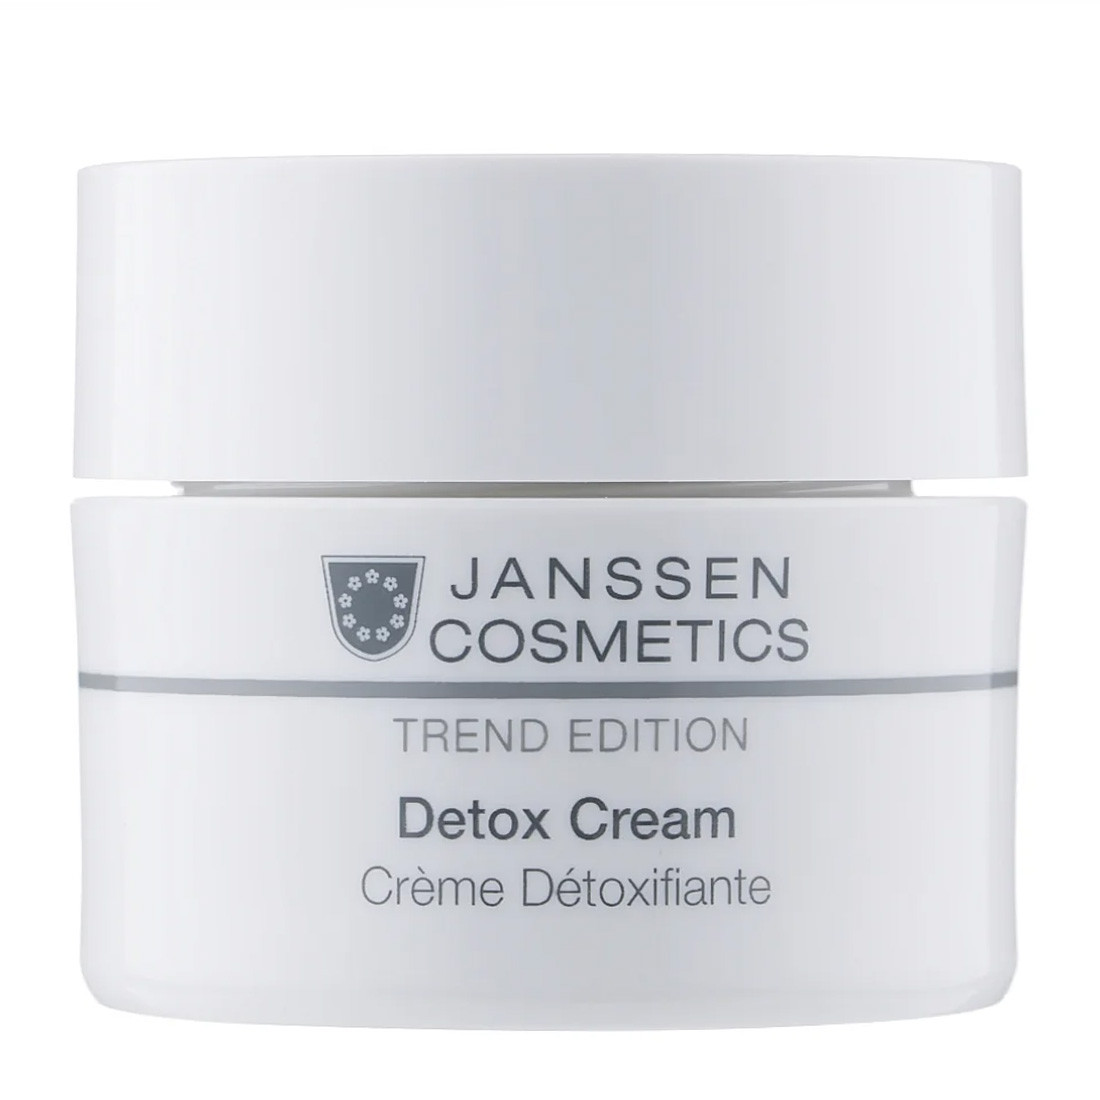 Насыщенный антиоксидантный детокс-крем Janssen Cosmetics Detox Cream